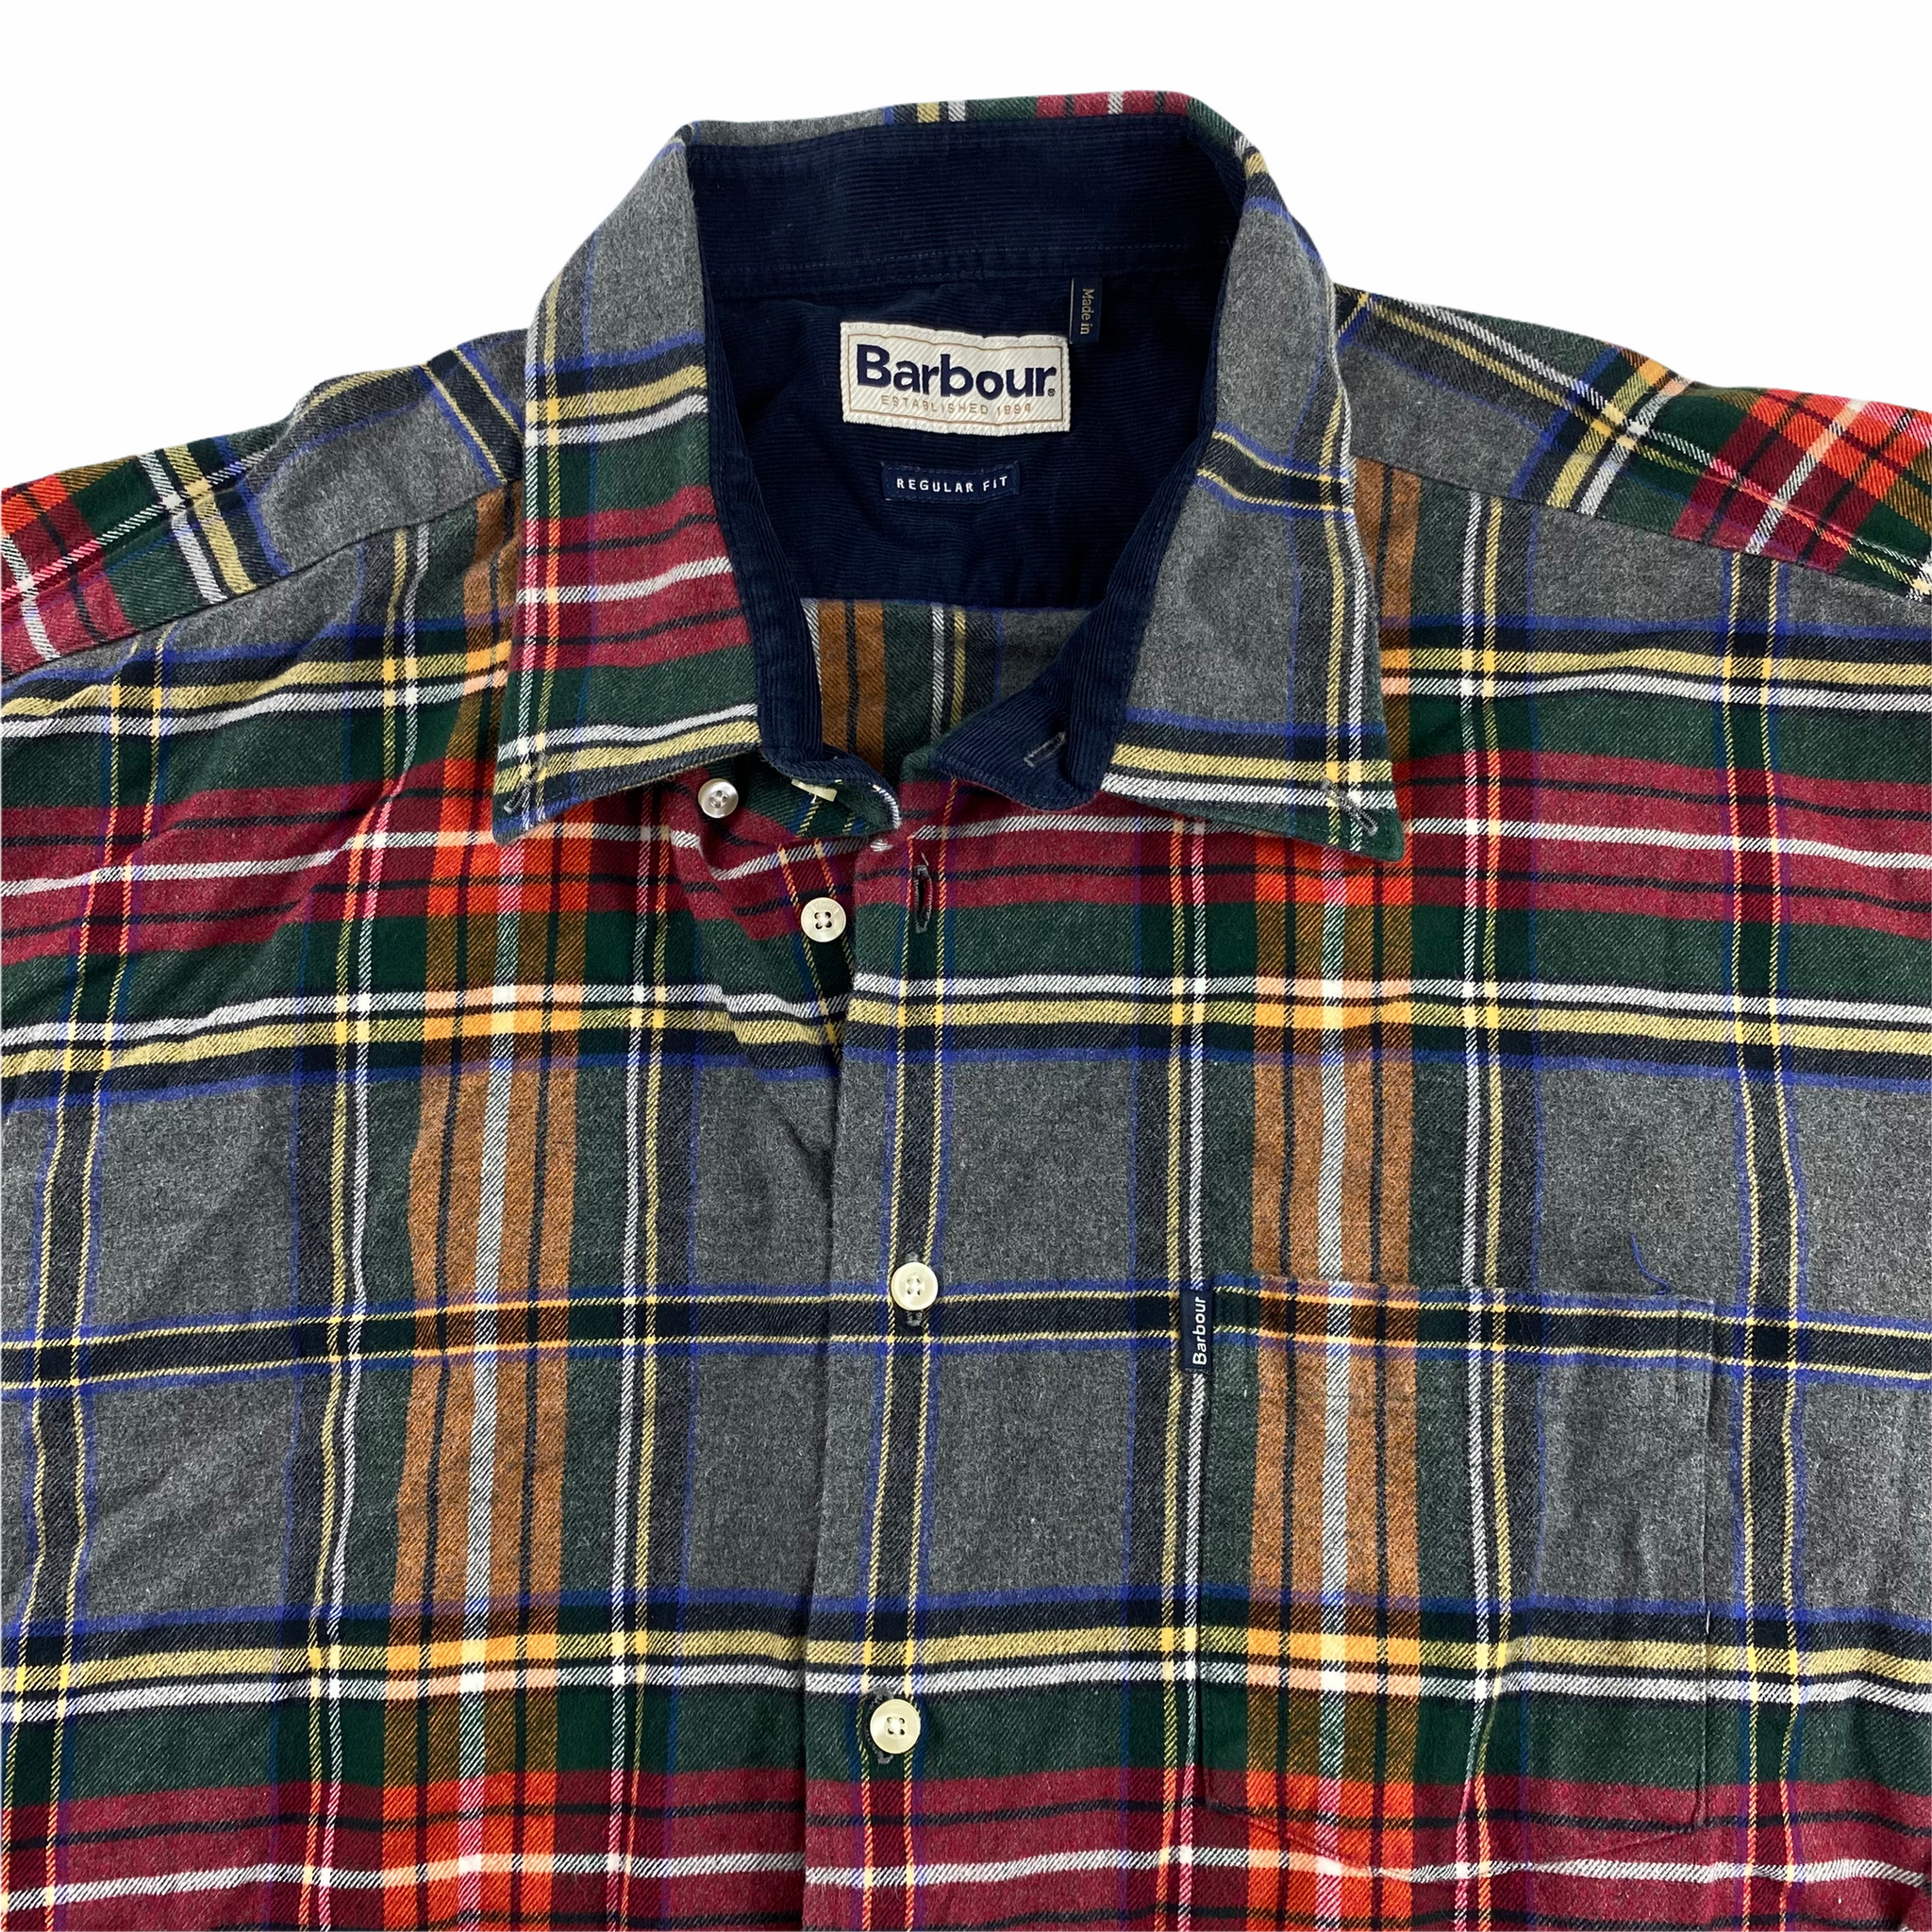 Barbour tartan shirt. cotton szXL – Vintage Sponsor